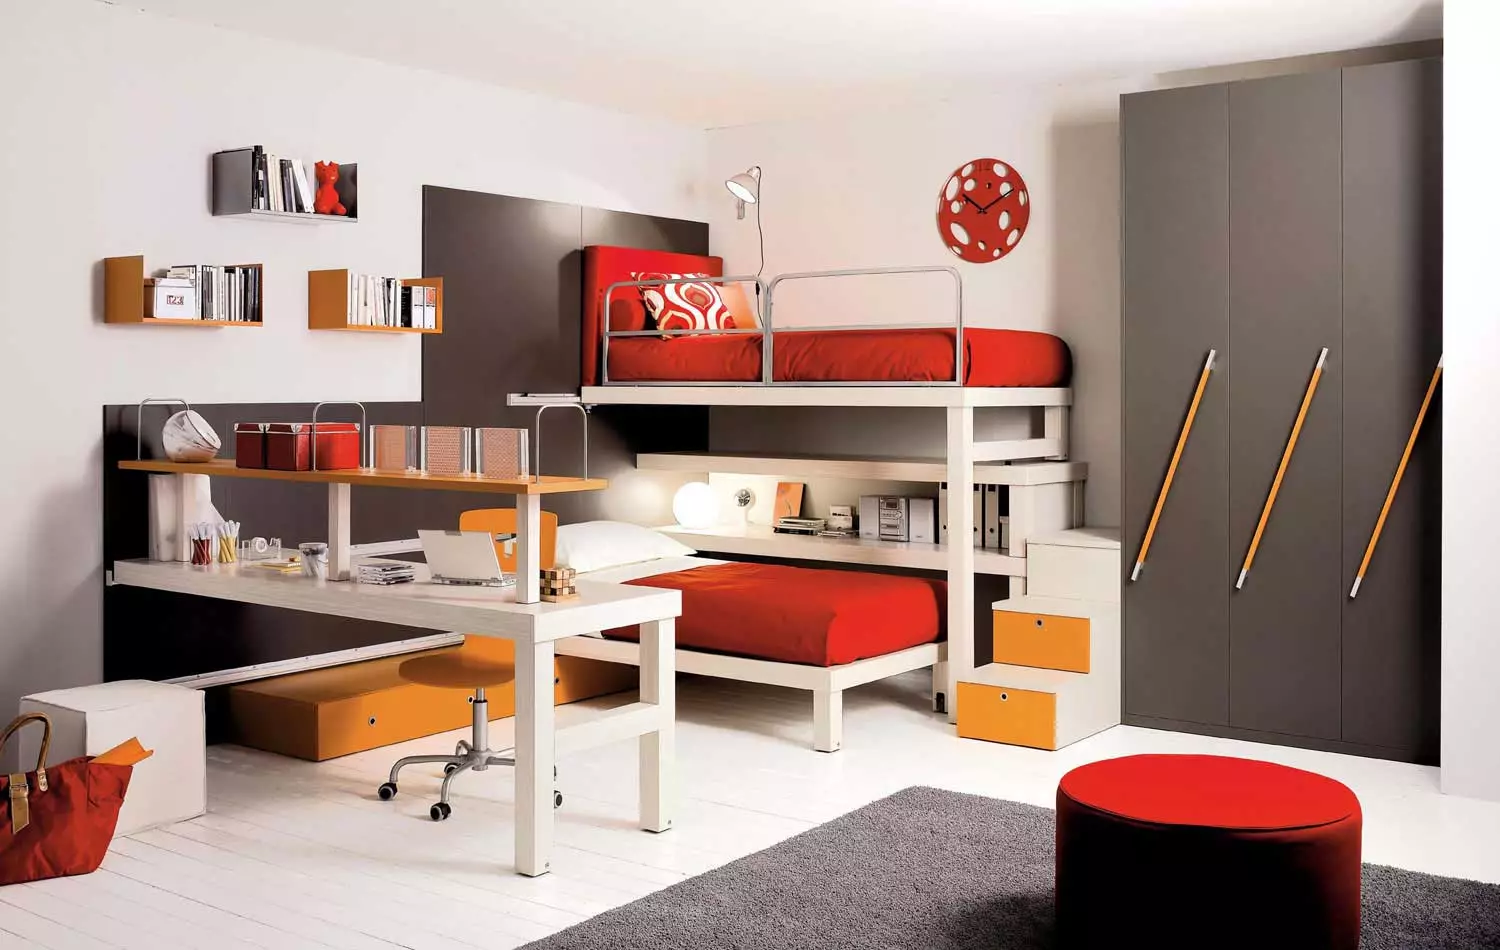 Plassering av møbler: Hovedreglene for å spare plass i leiligheten